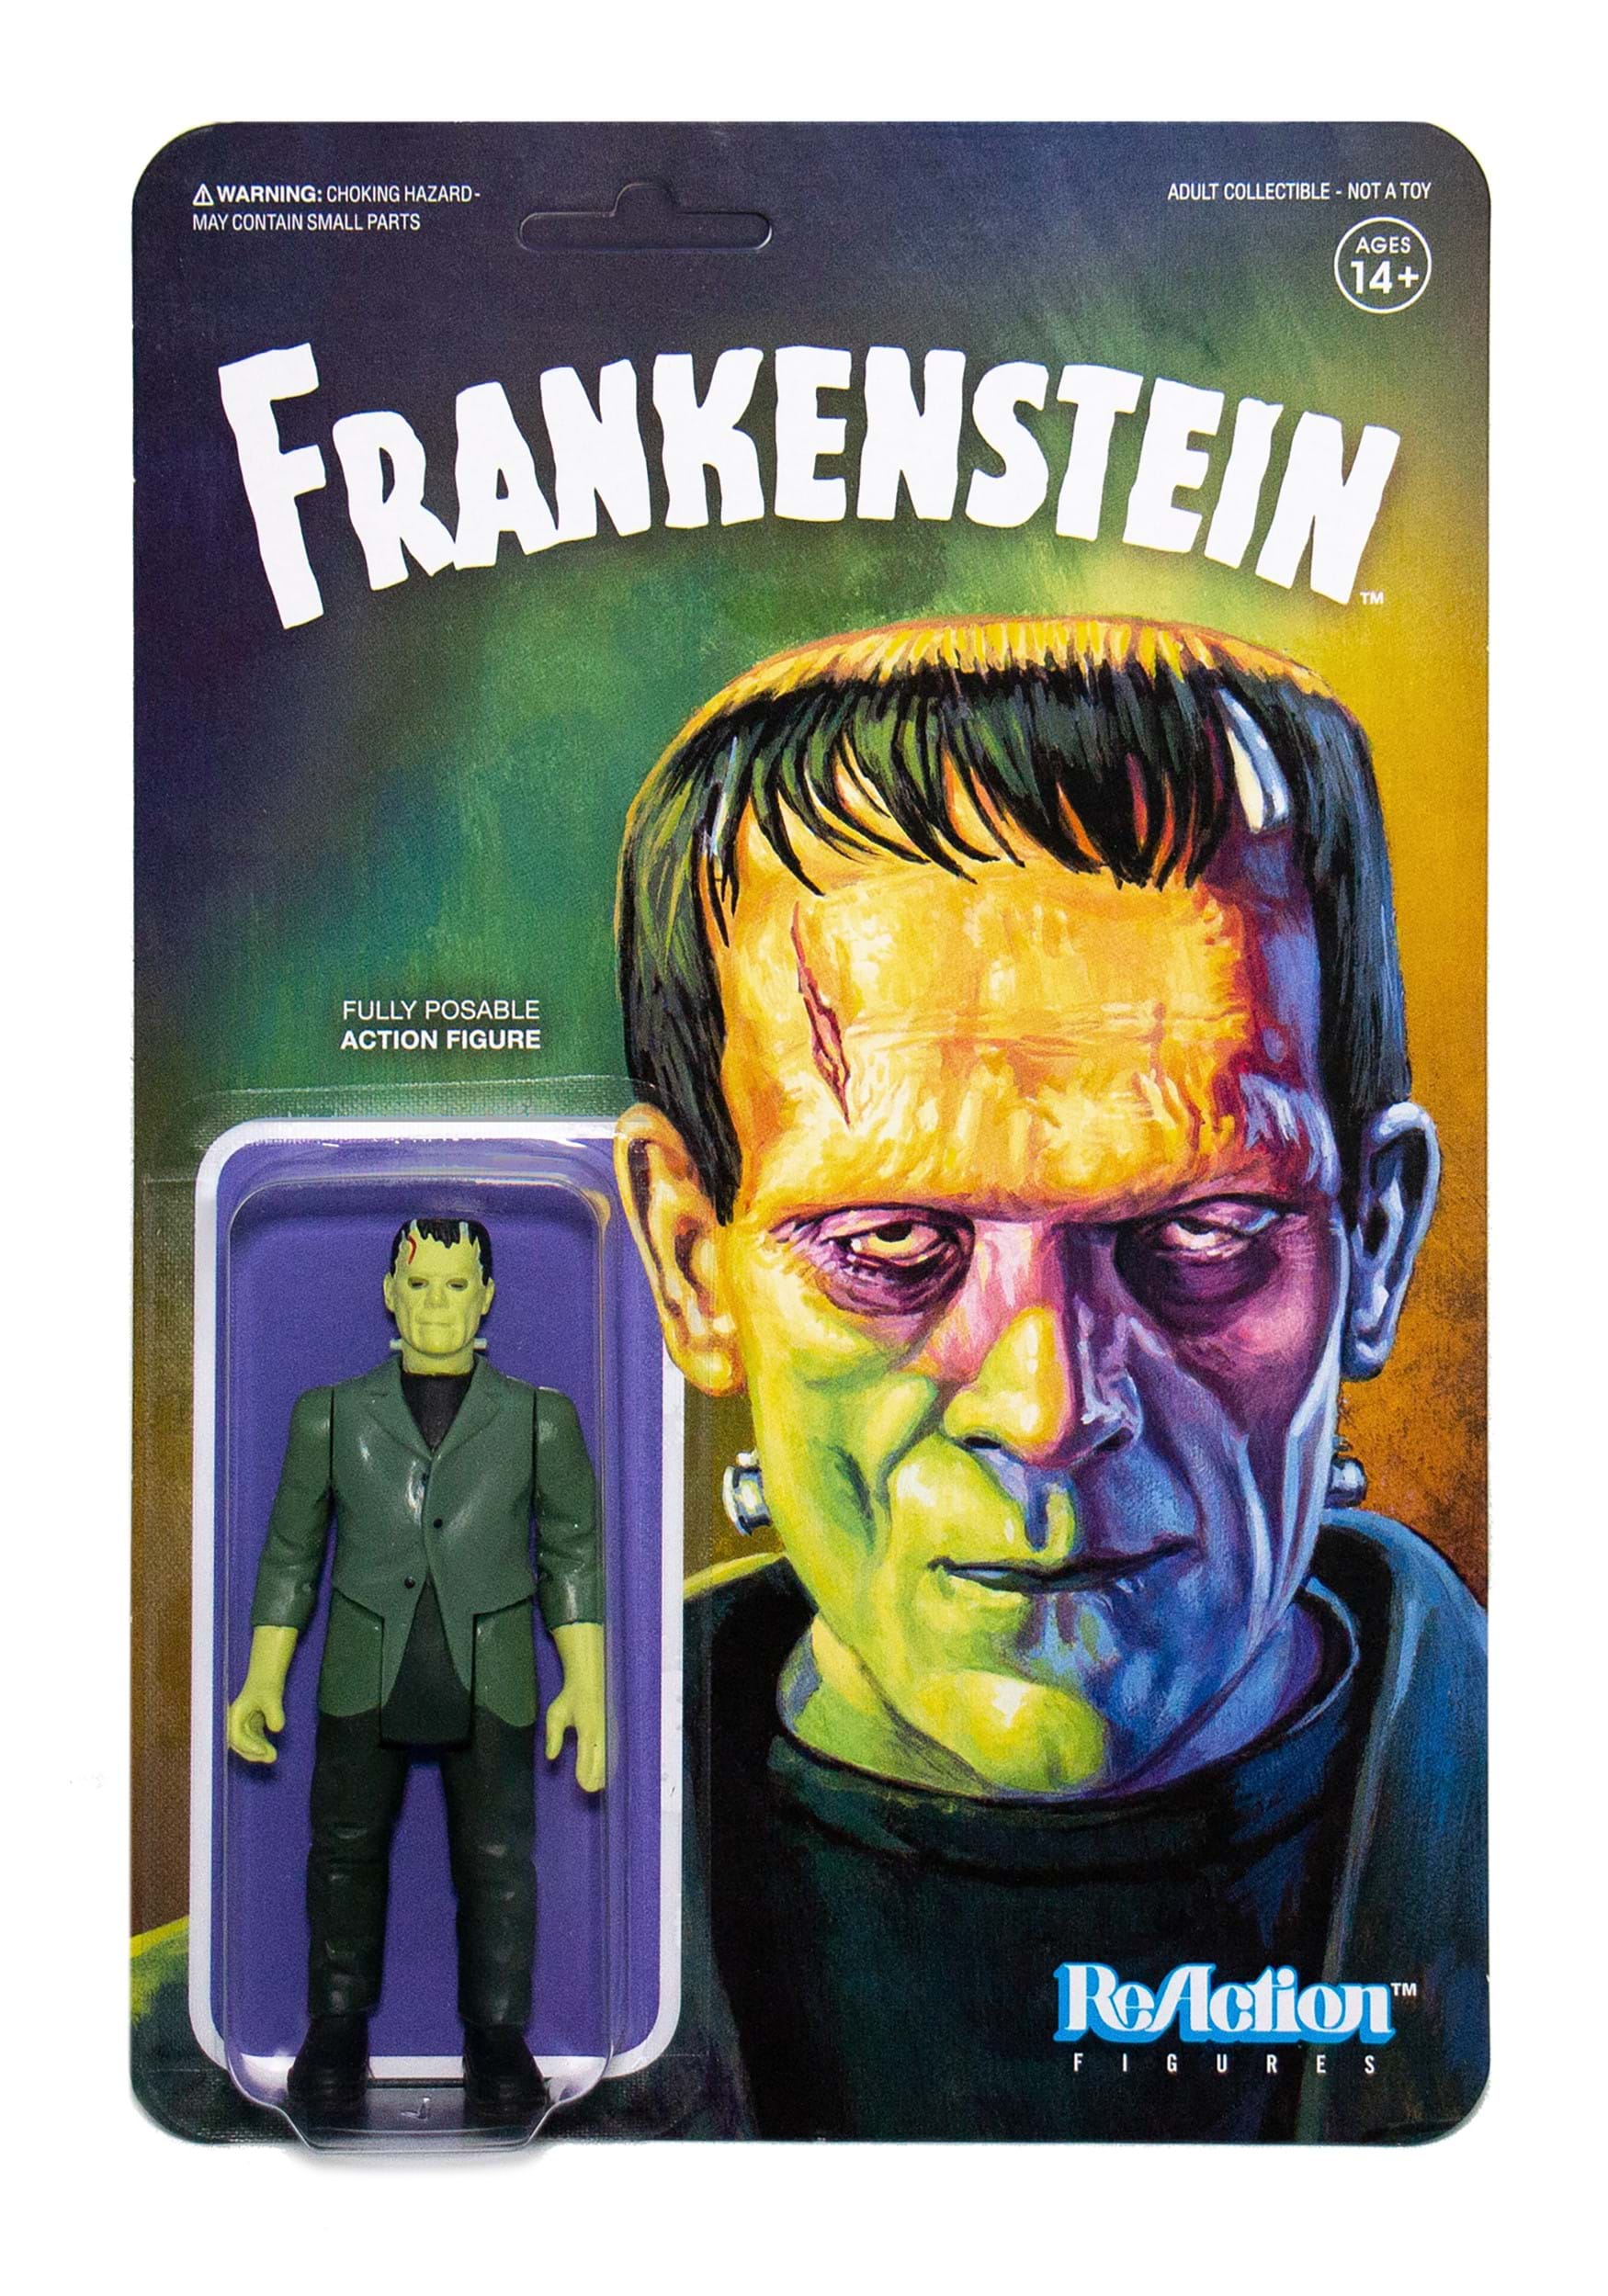 Universal Monsters Frankenstein Reaction Action Figure